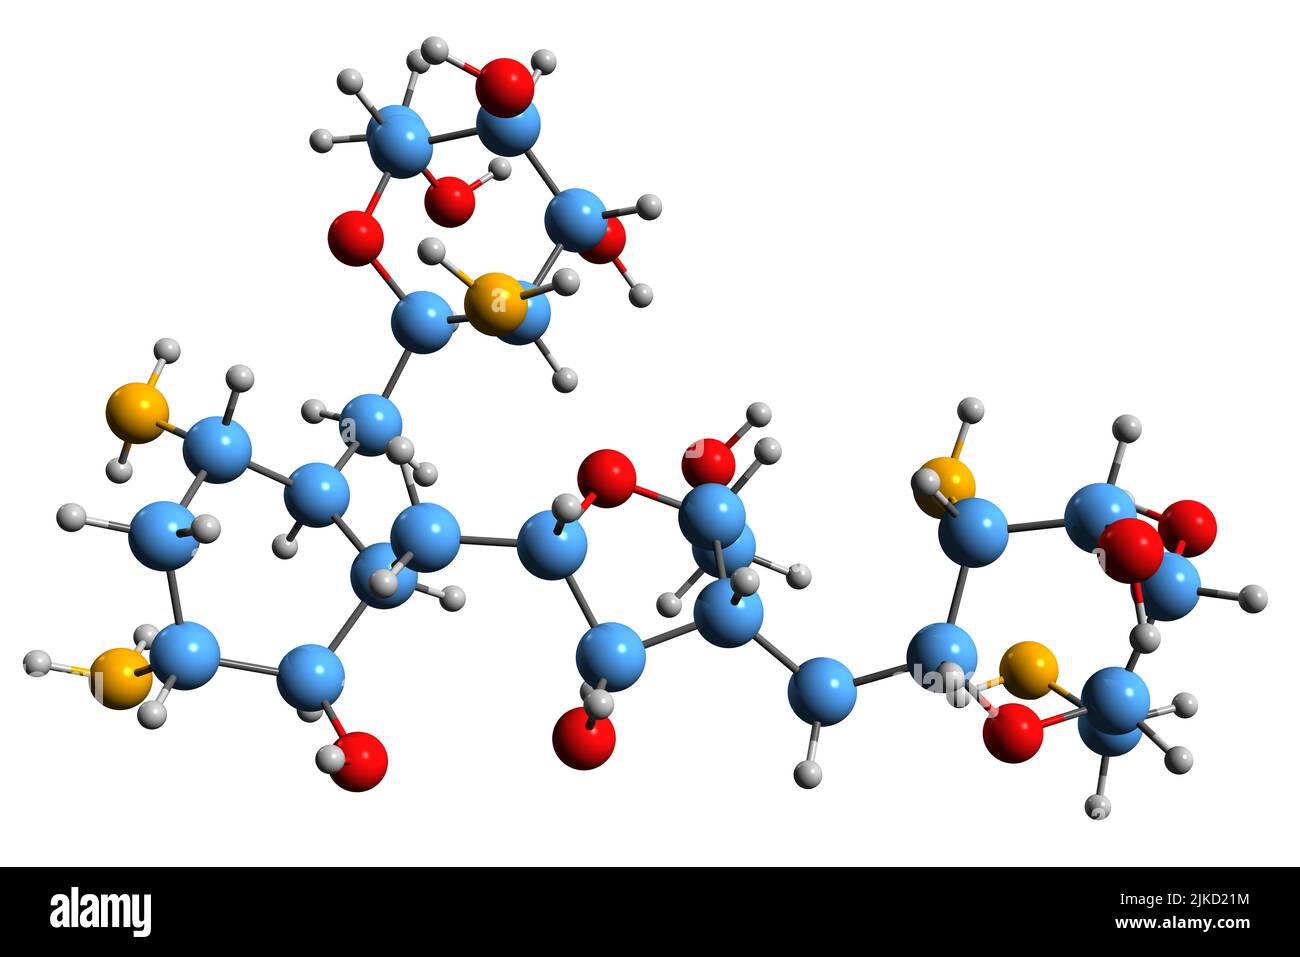 3D Bild der Paromomycin-Skelettformel - molekularchemische Struktur von antimikrobiellem Aminosidin isoliert auf weißem Hintergrund Stockfoto